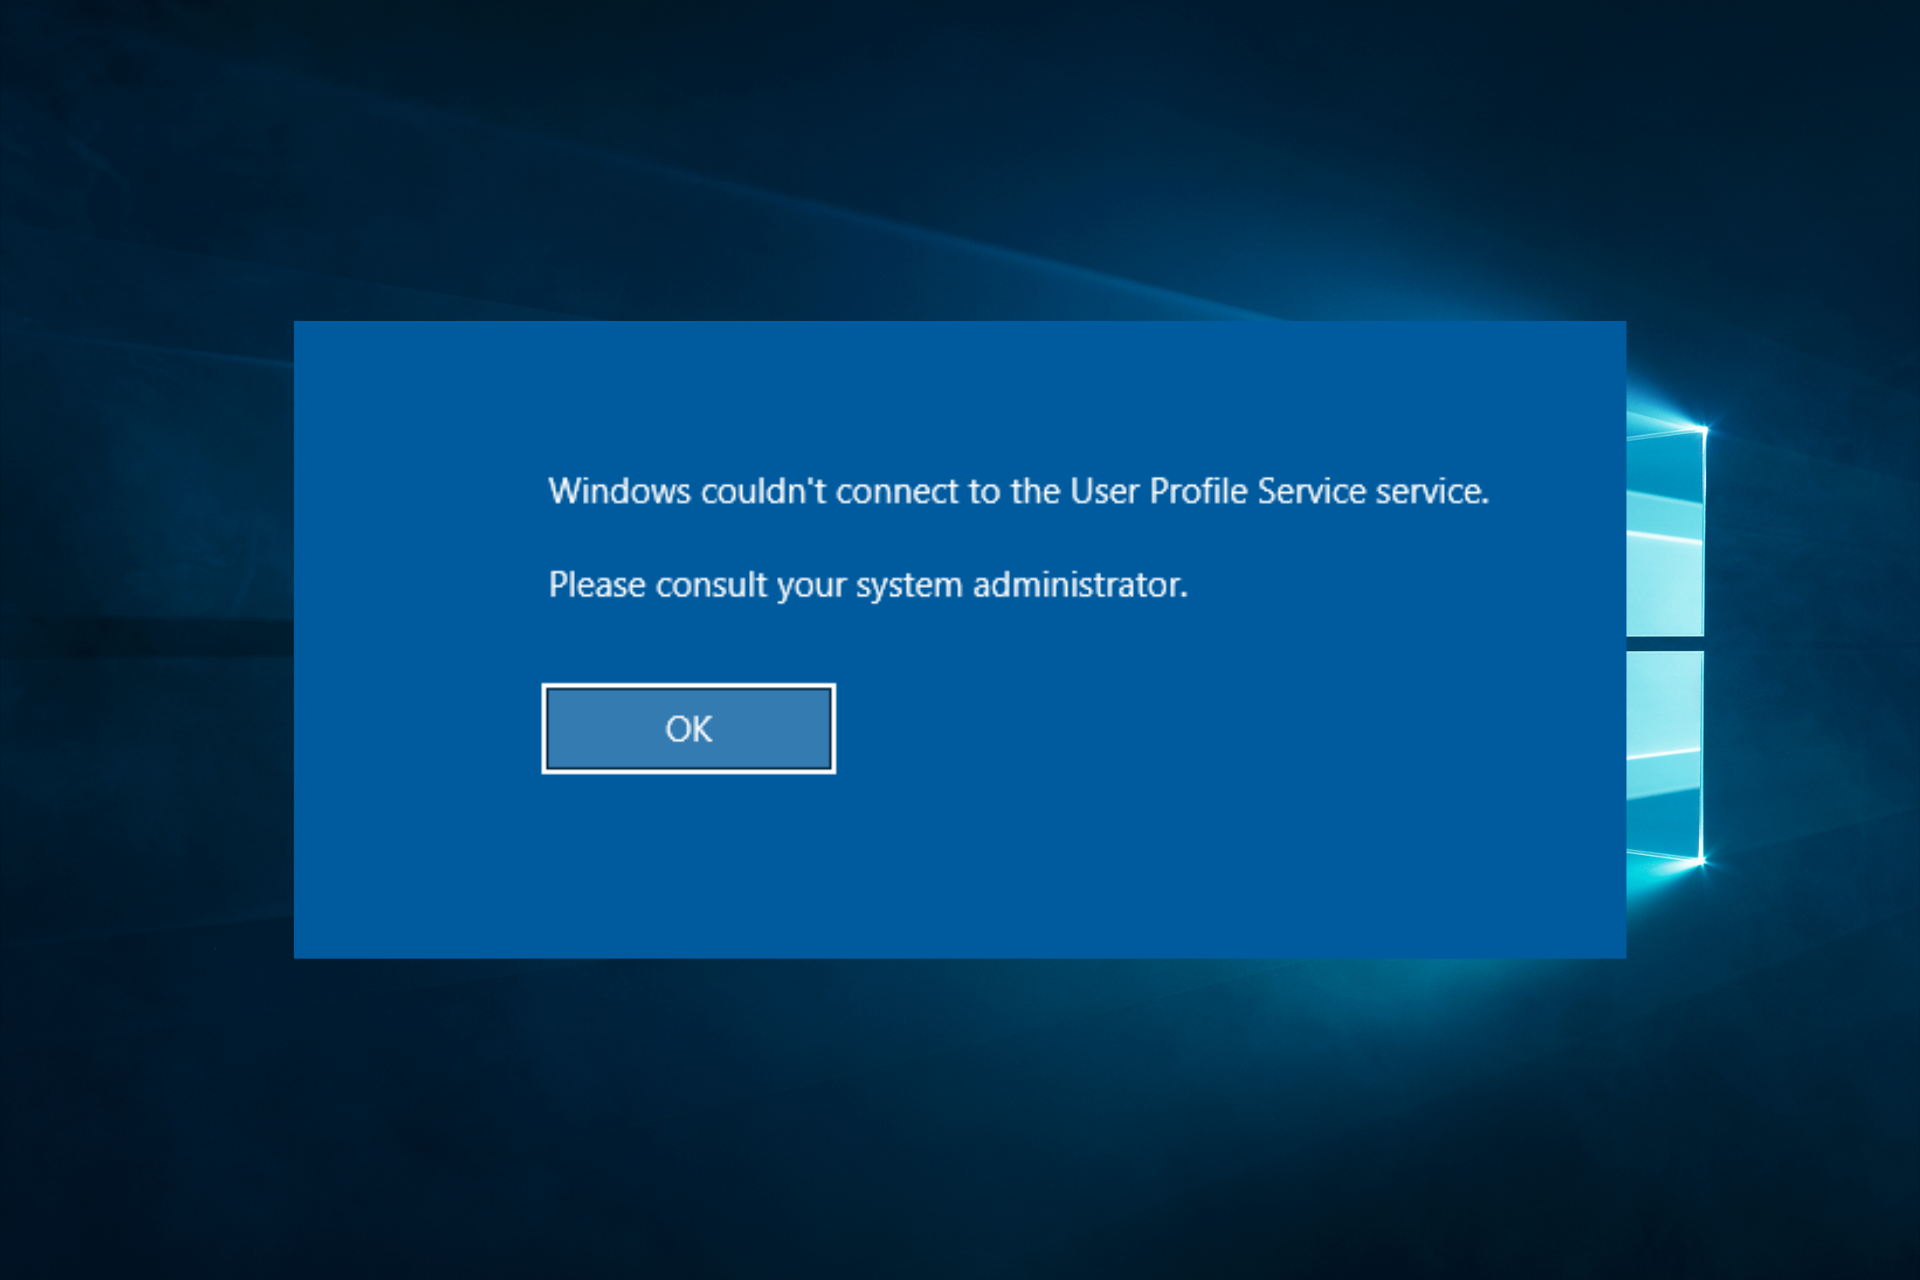 Solución: Windows 10 no pudo conectarse al servicio ProfSvc